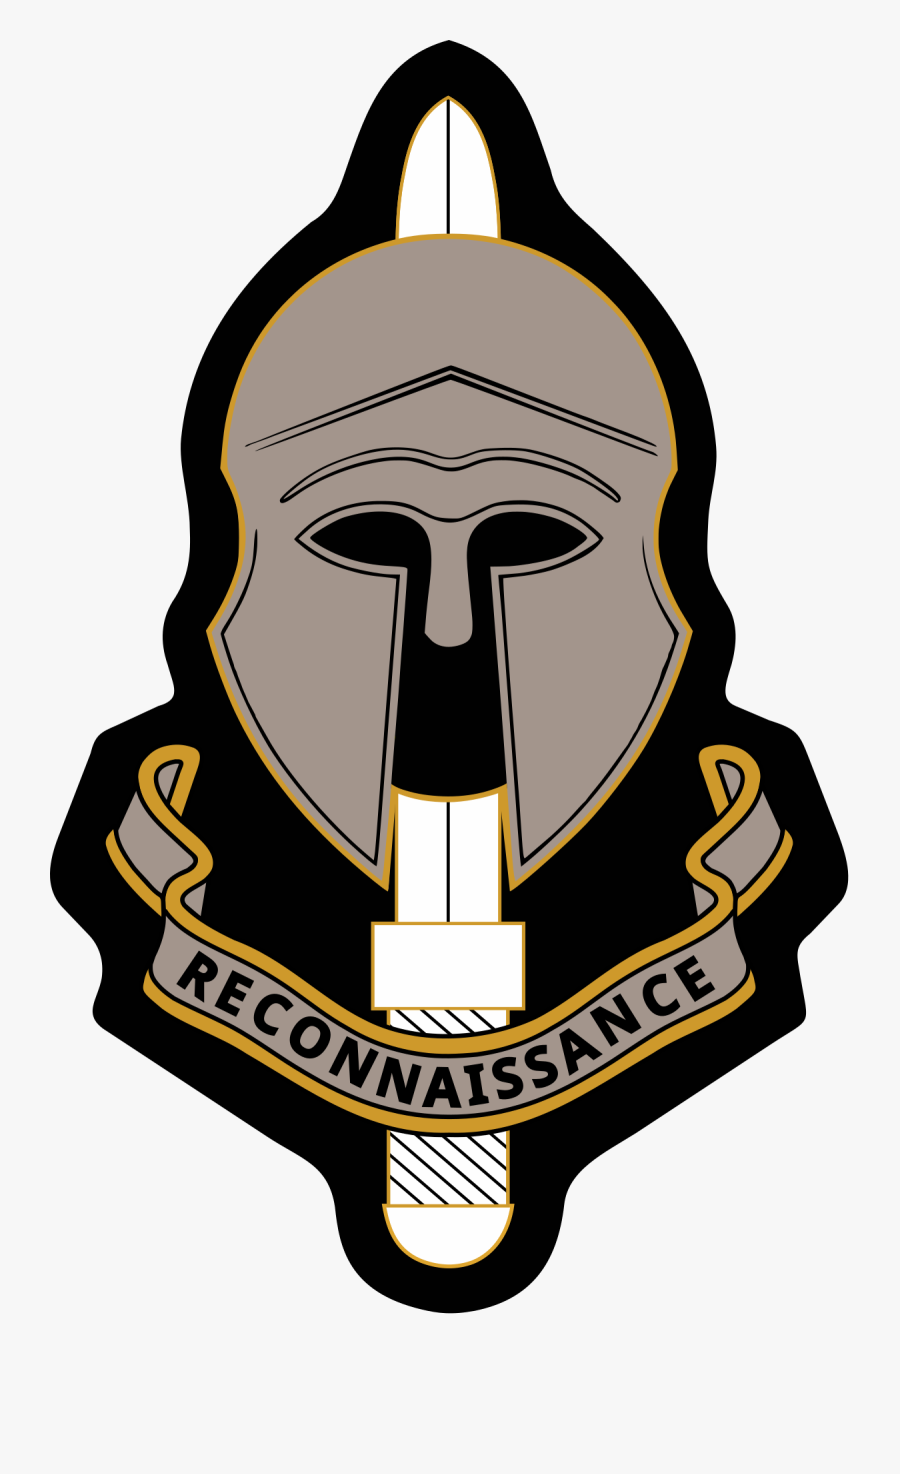 Special Reconnaissance Regiment, Transparent Clipart